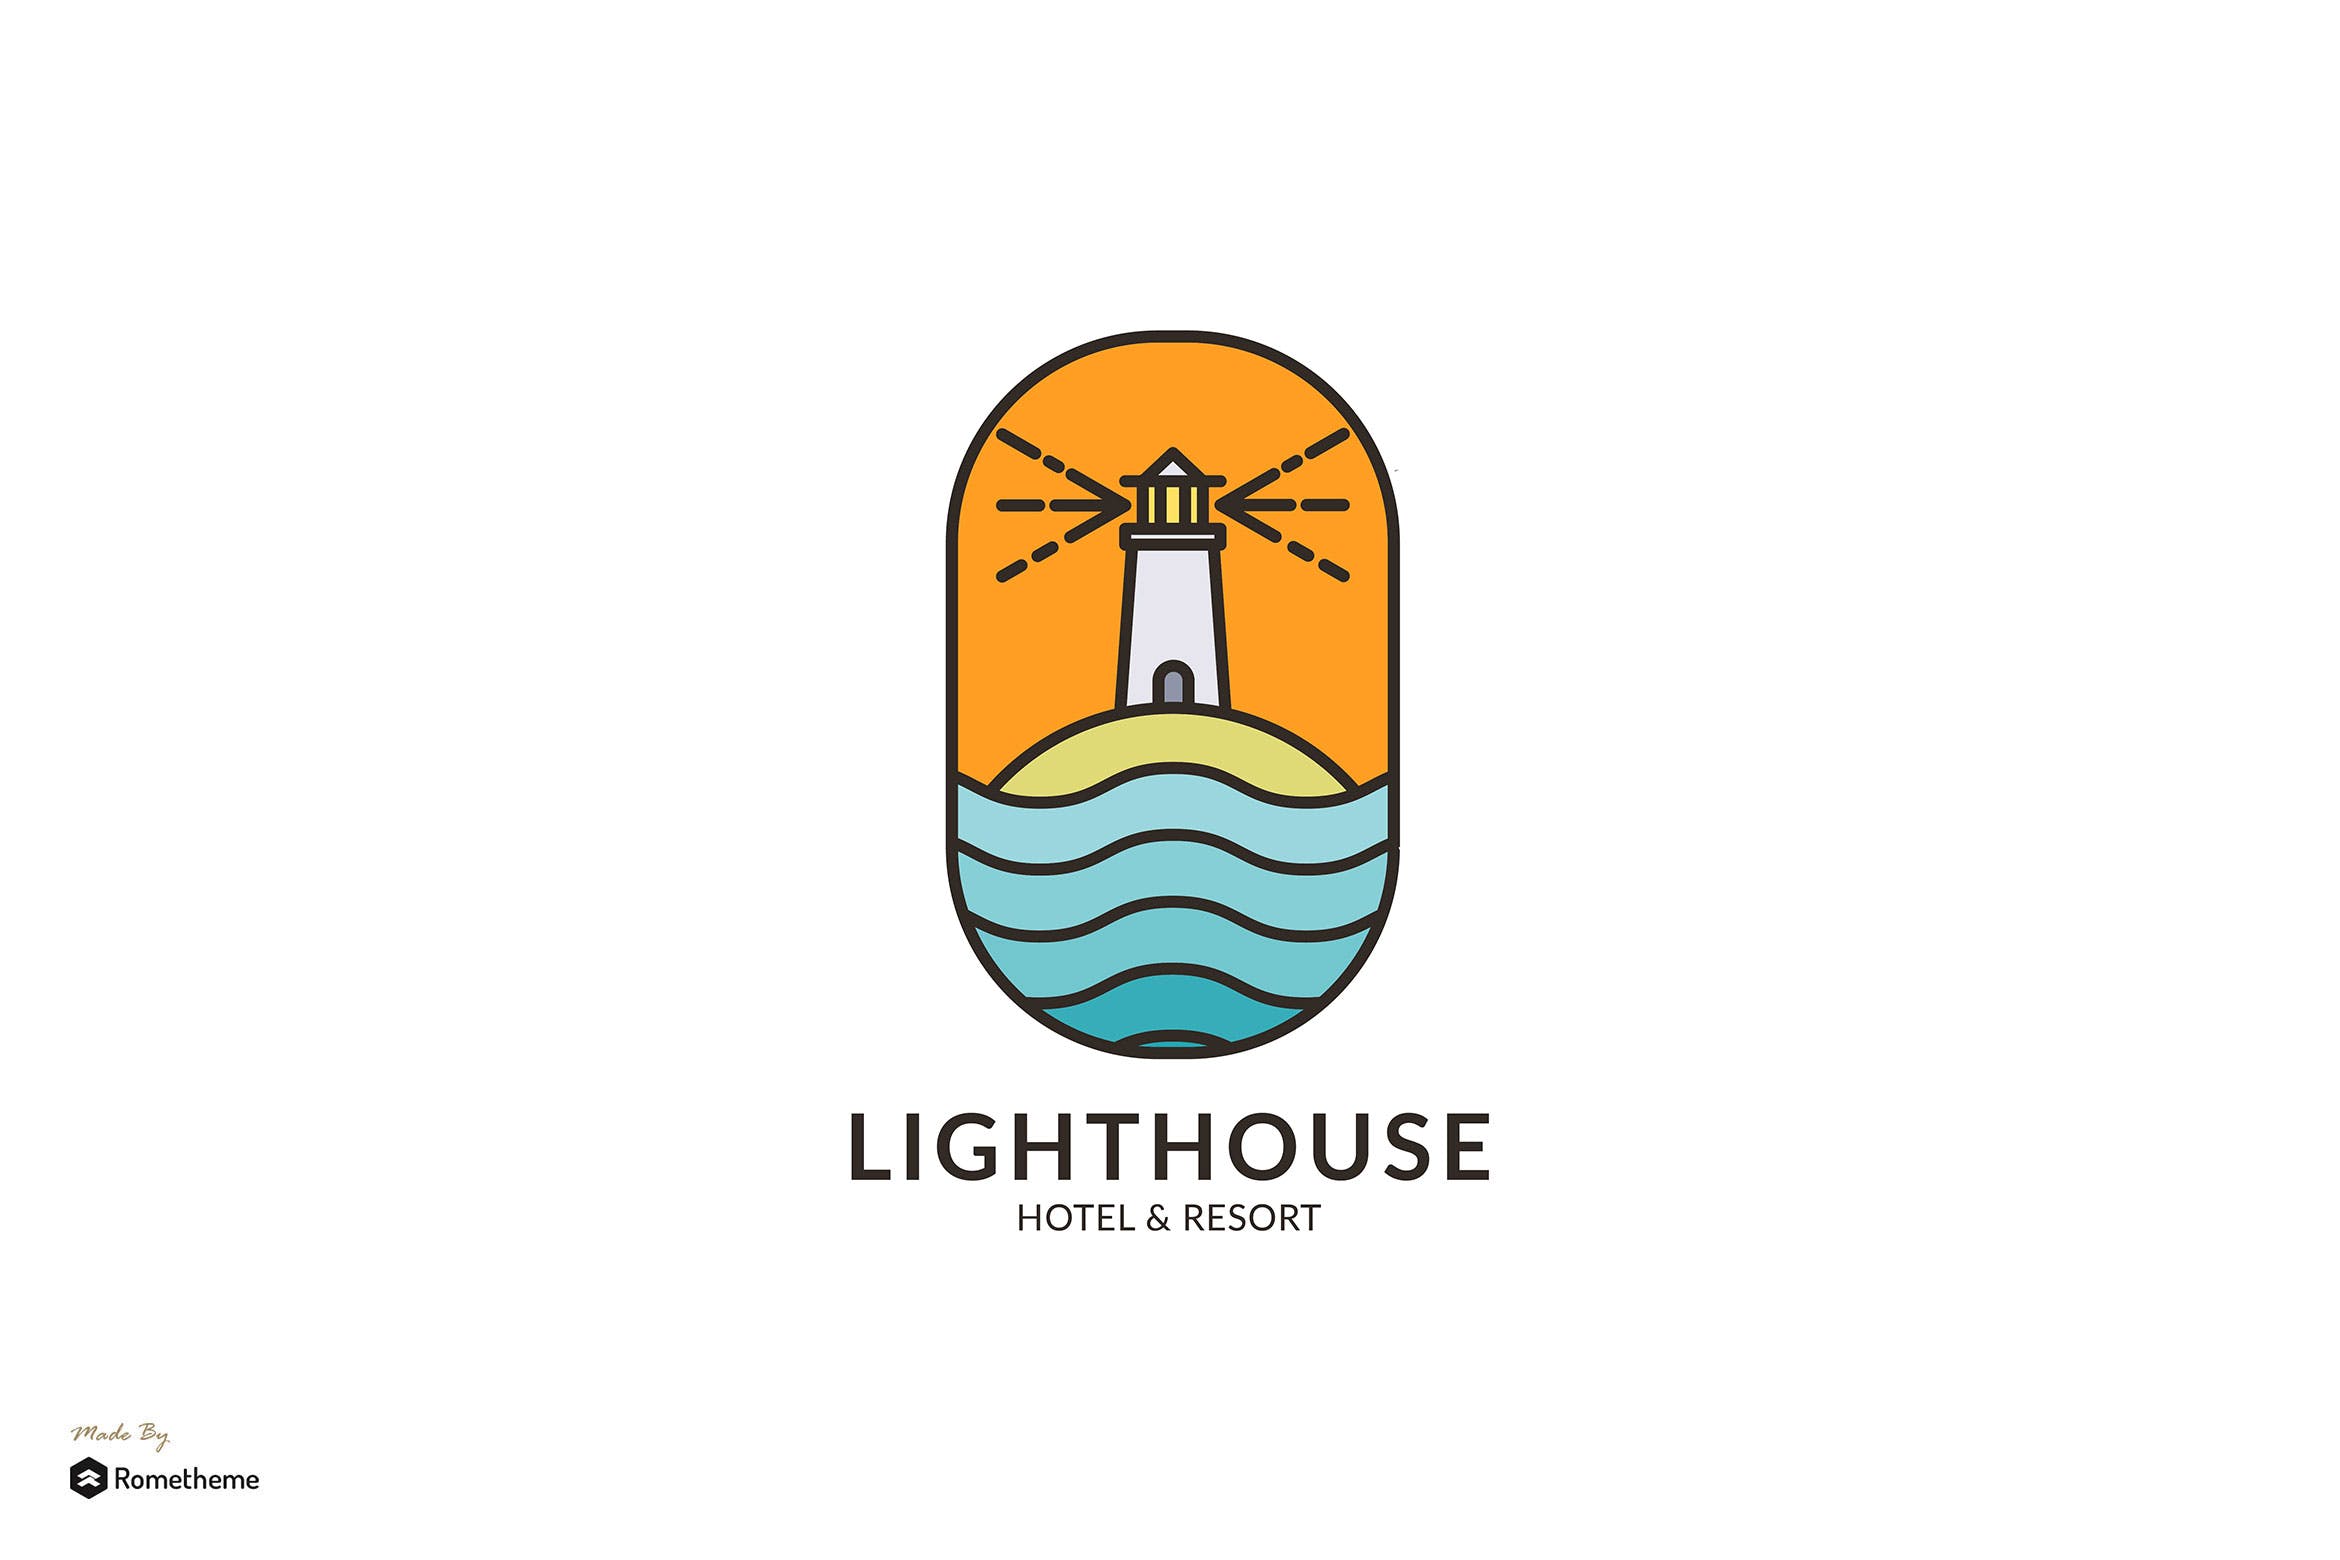 灯塔酒店/度假村商标&品牌Logo设计素材库精选模板 Lighthouse Hotel & Resort – Logo Template RB插图